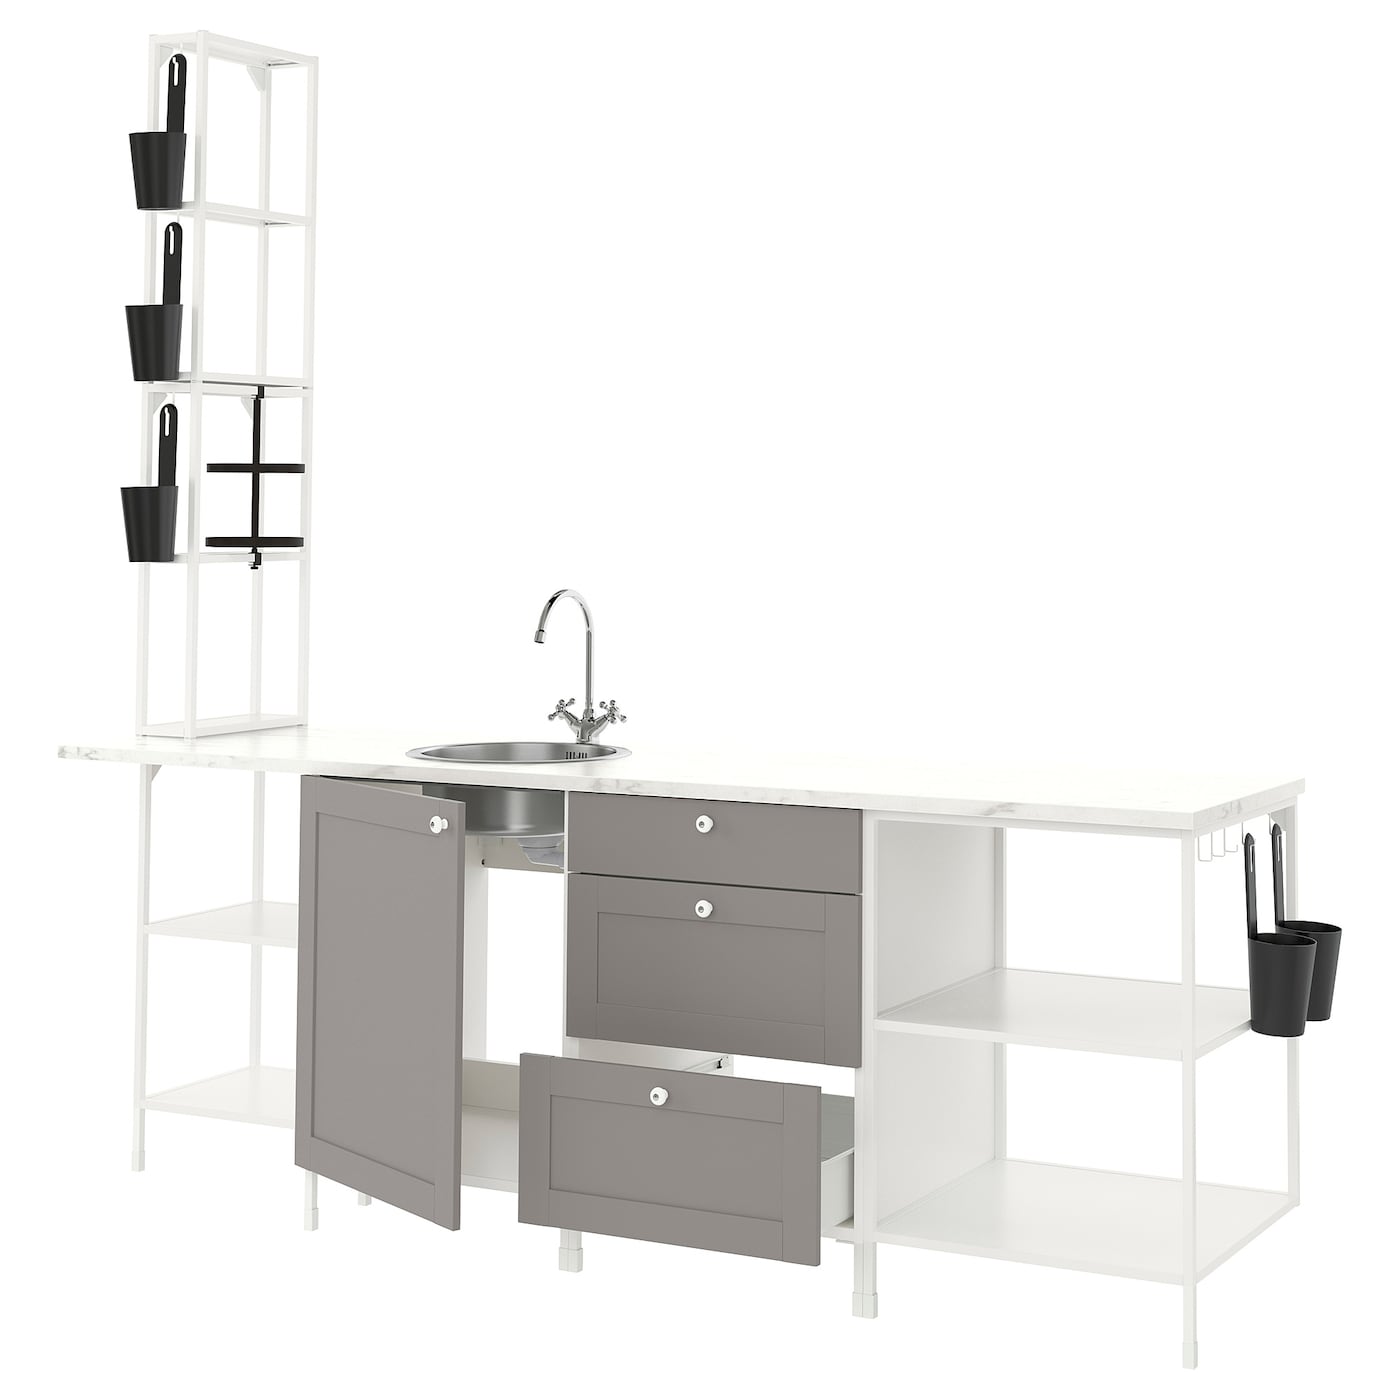 Комбинация для кухонного хранения  - ENHET  IKEA/ ЭНХЕТ ИКЕА, 243x63,5x241 см, белый/серый